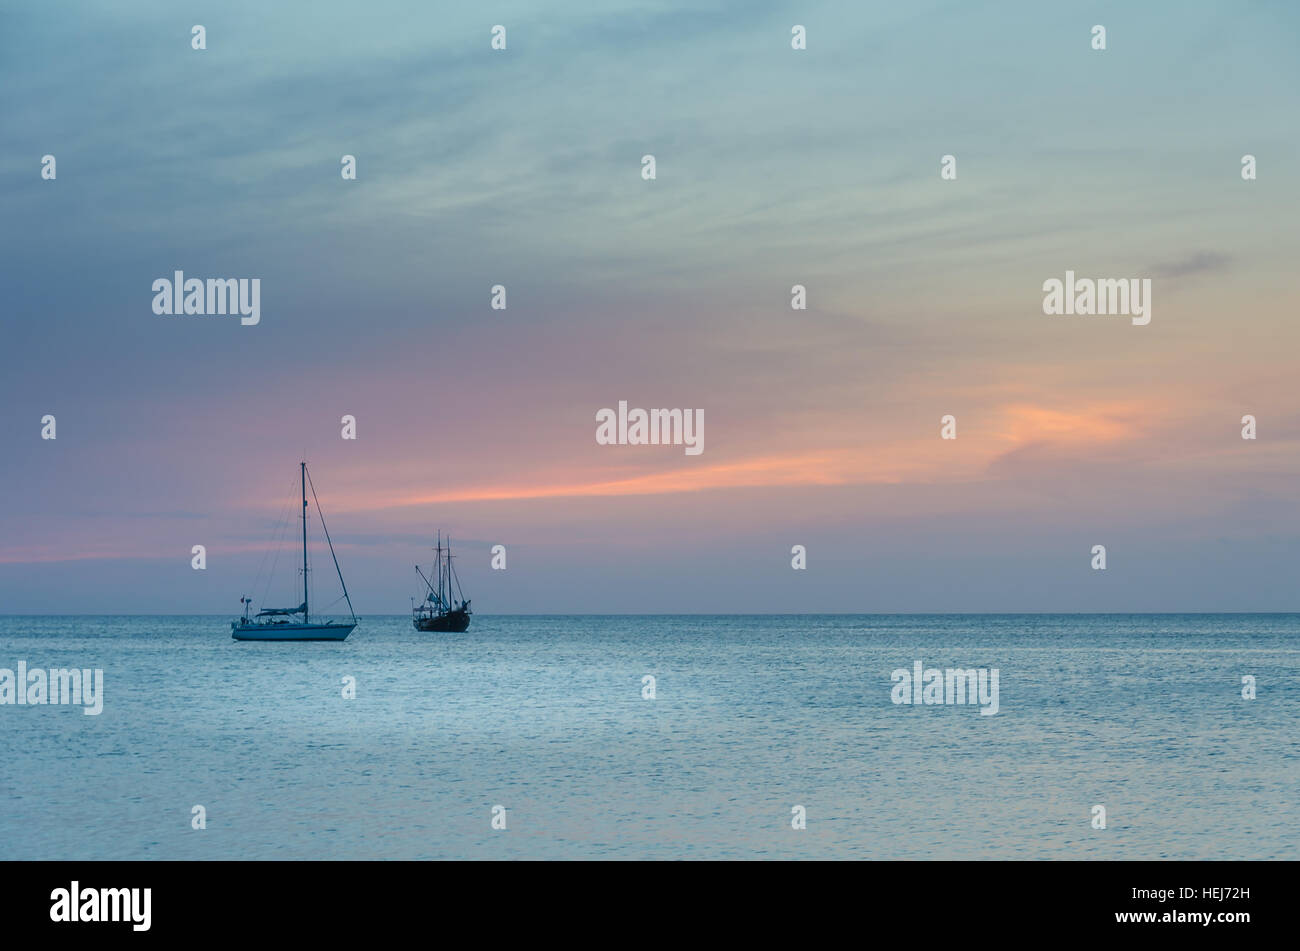 Barche a vela in mare la navigazione sotto il tramonto. L'immagine è stata presa da Palm Beach di Aruba, nel mar dei Caraibi. Foto Stock